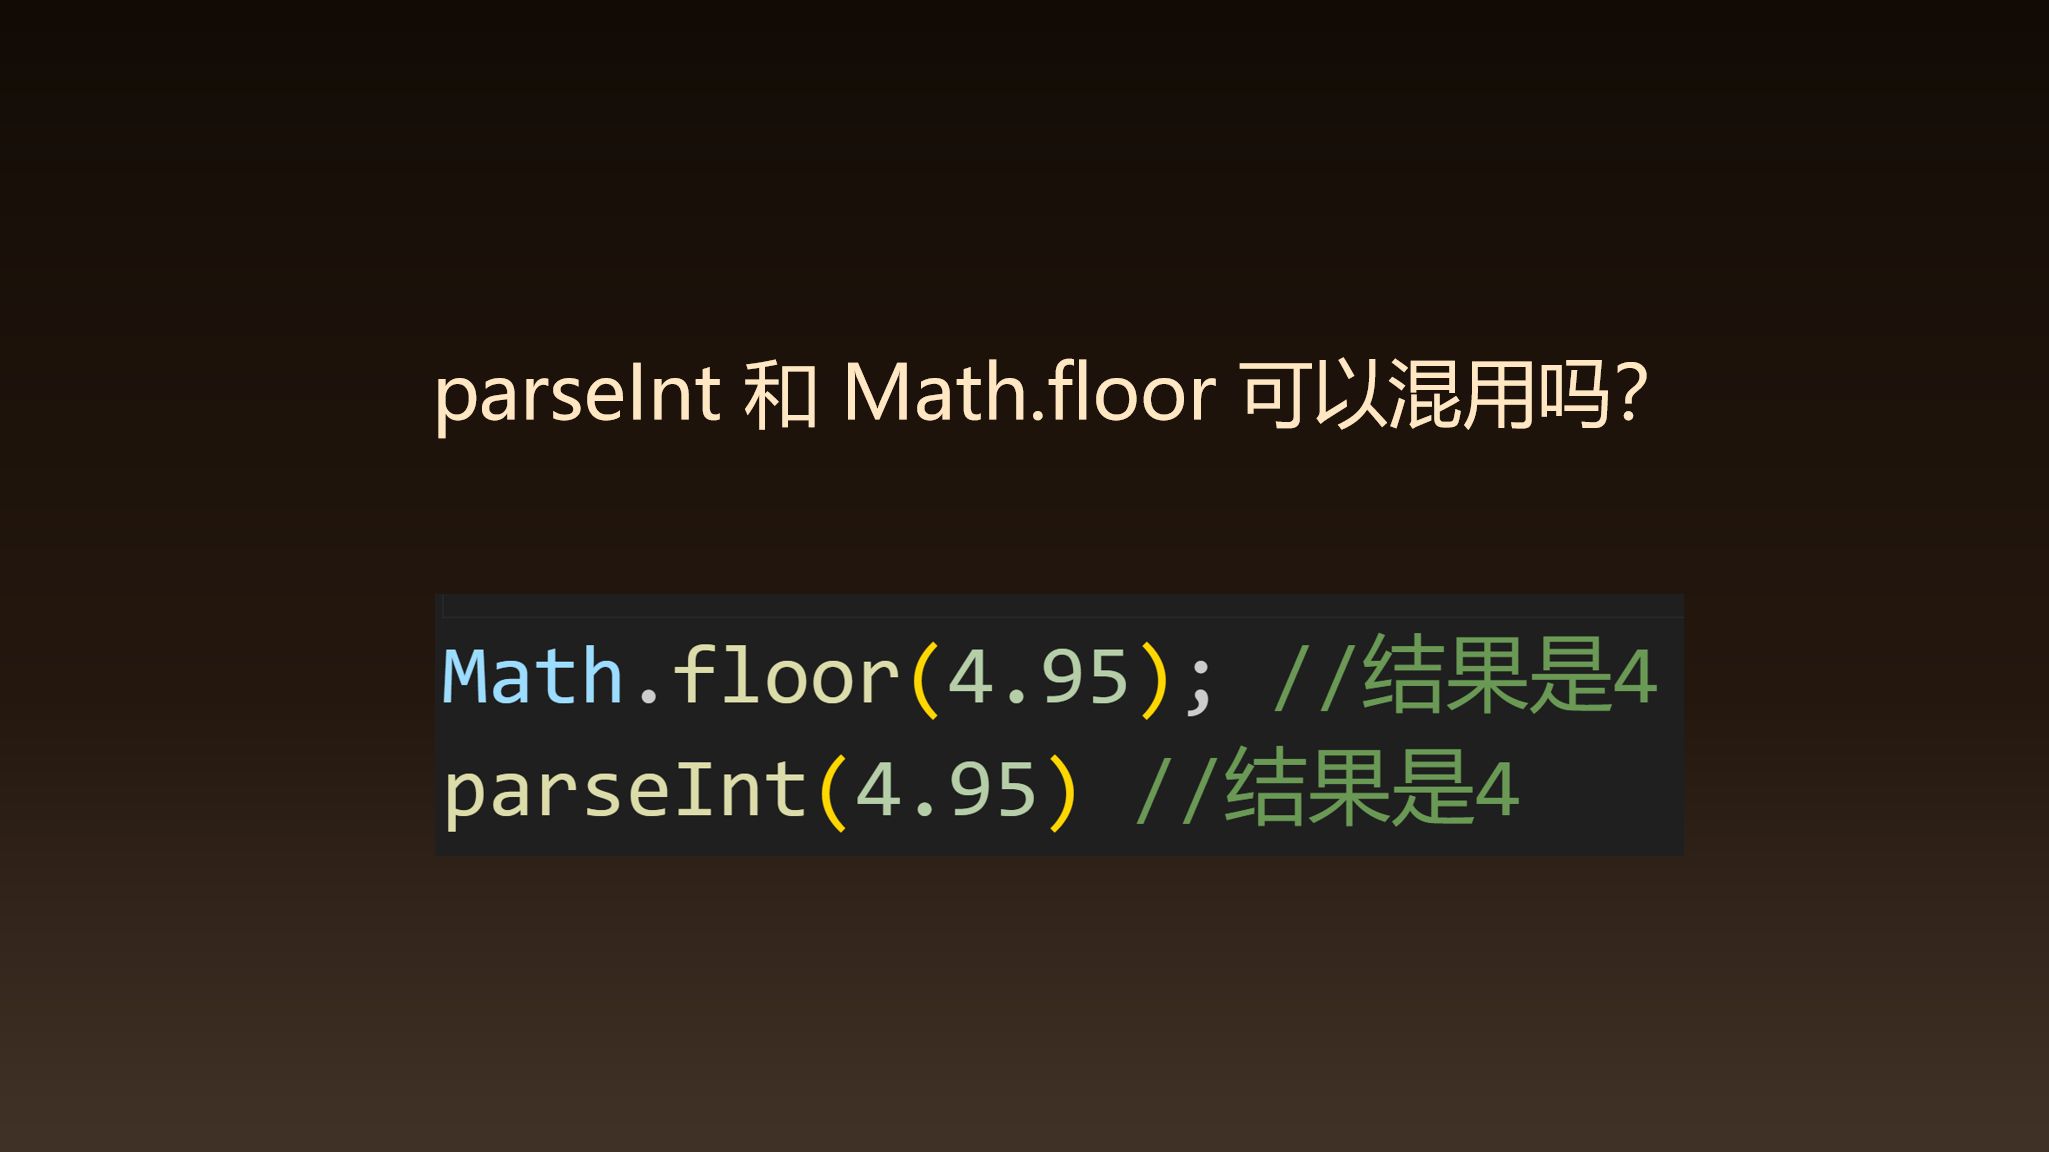 前端面试：parseInt 和 Math.floor 能否混用？什么场景下只能使用 Math.floor?